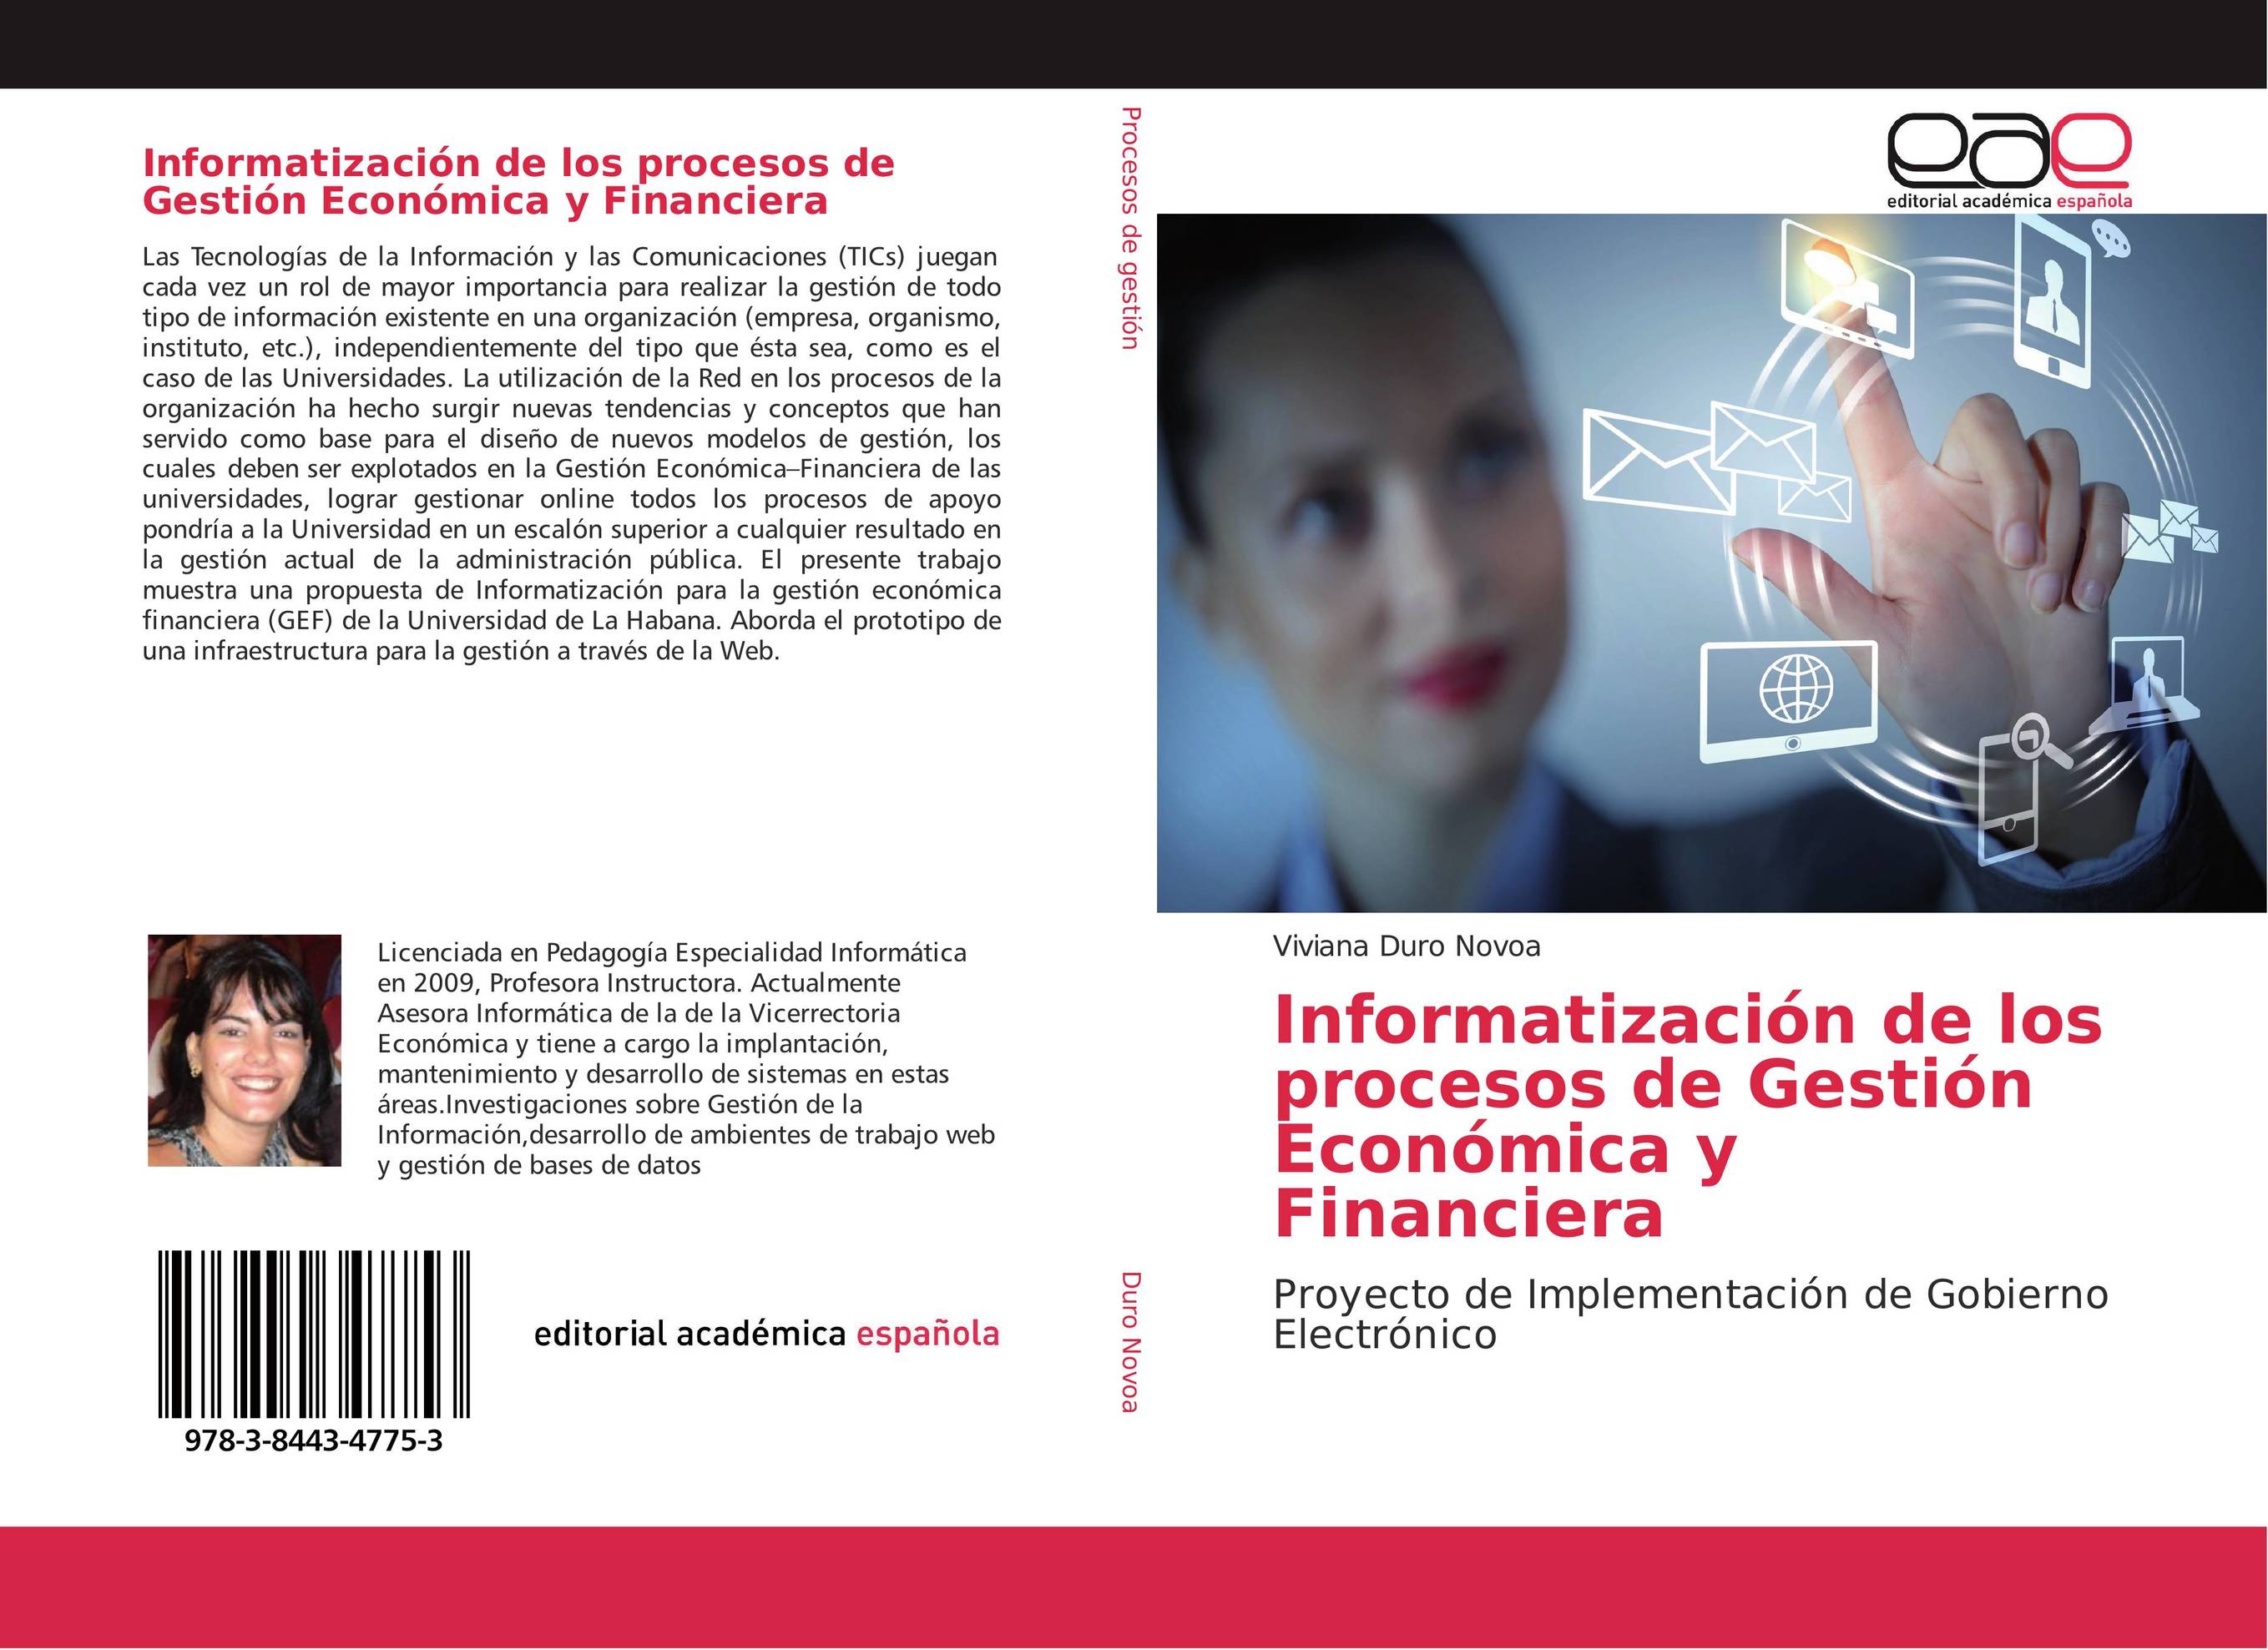 Informatización de los procesos de Gestión Económica y Financiera